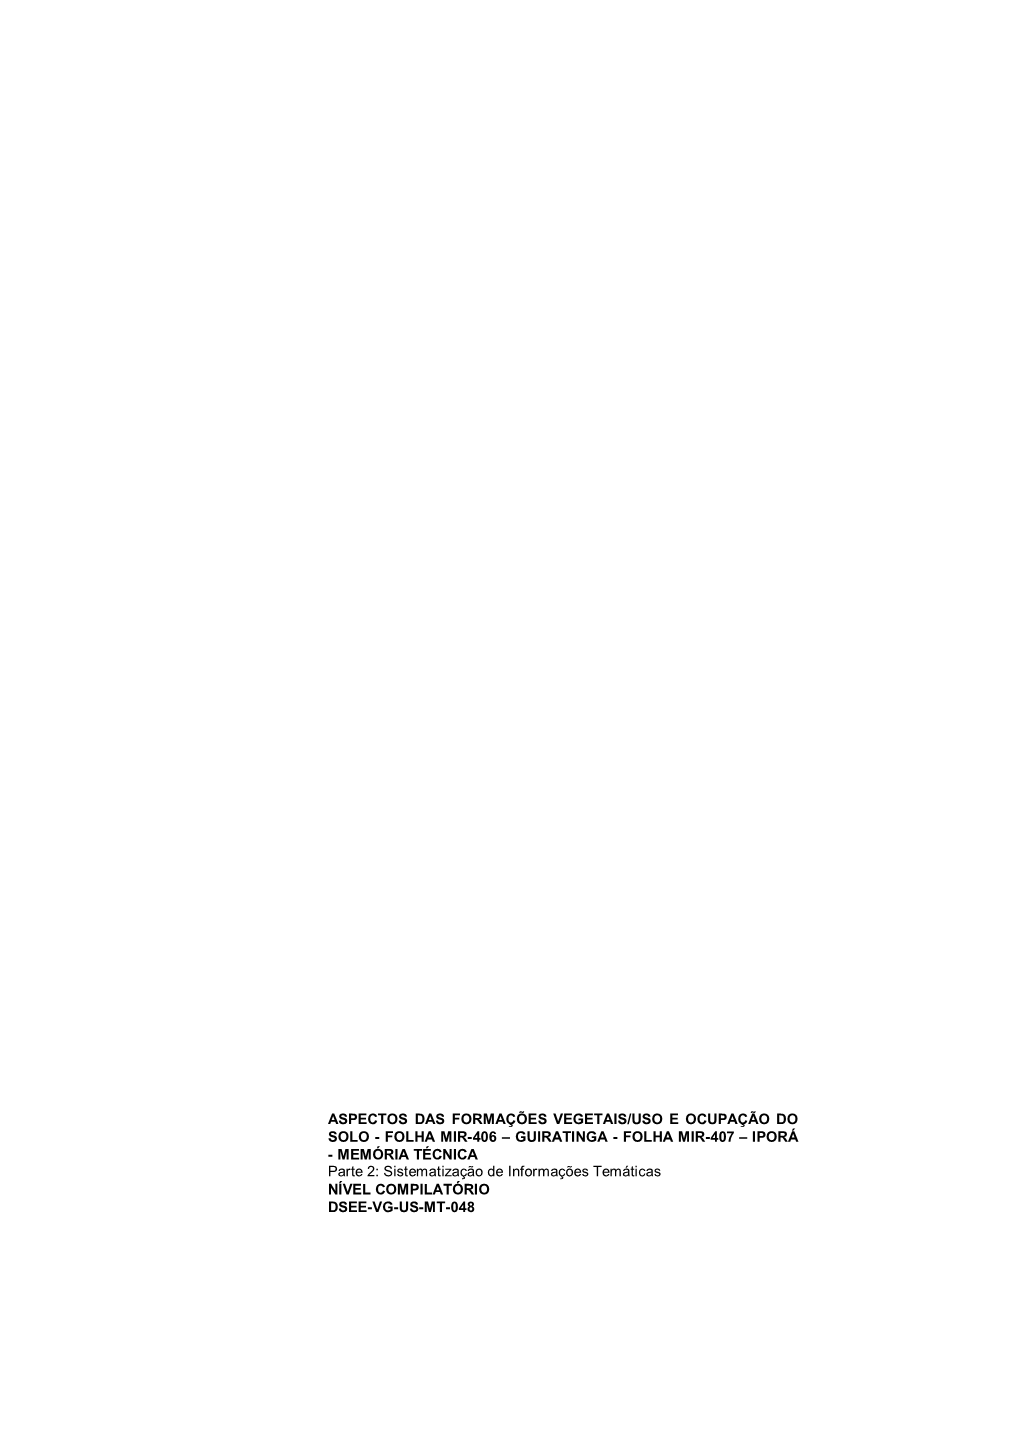 GUIRATINGA - FOLHA MIR-407 – IPORÁ - MEMÓRIA TÉCNICA Parte 2: Sistematização De Informações Temáticas NÍVEL COMPILATÓRIO DSEE-VG-US-MT-048 PLANO DA OBRA